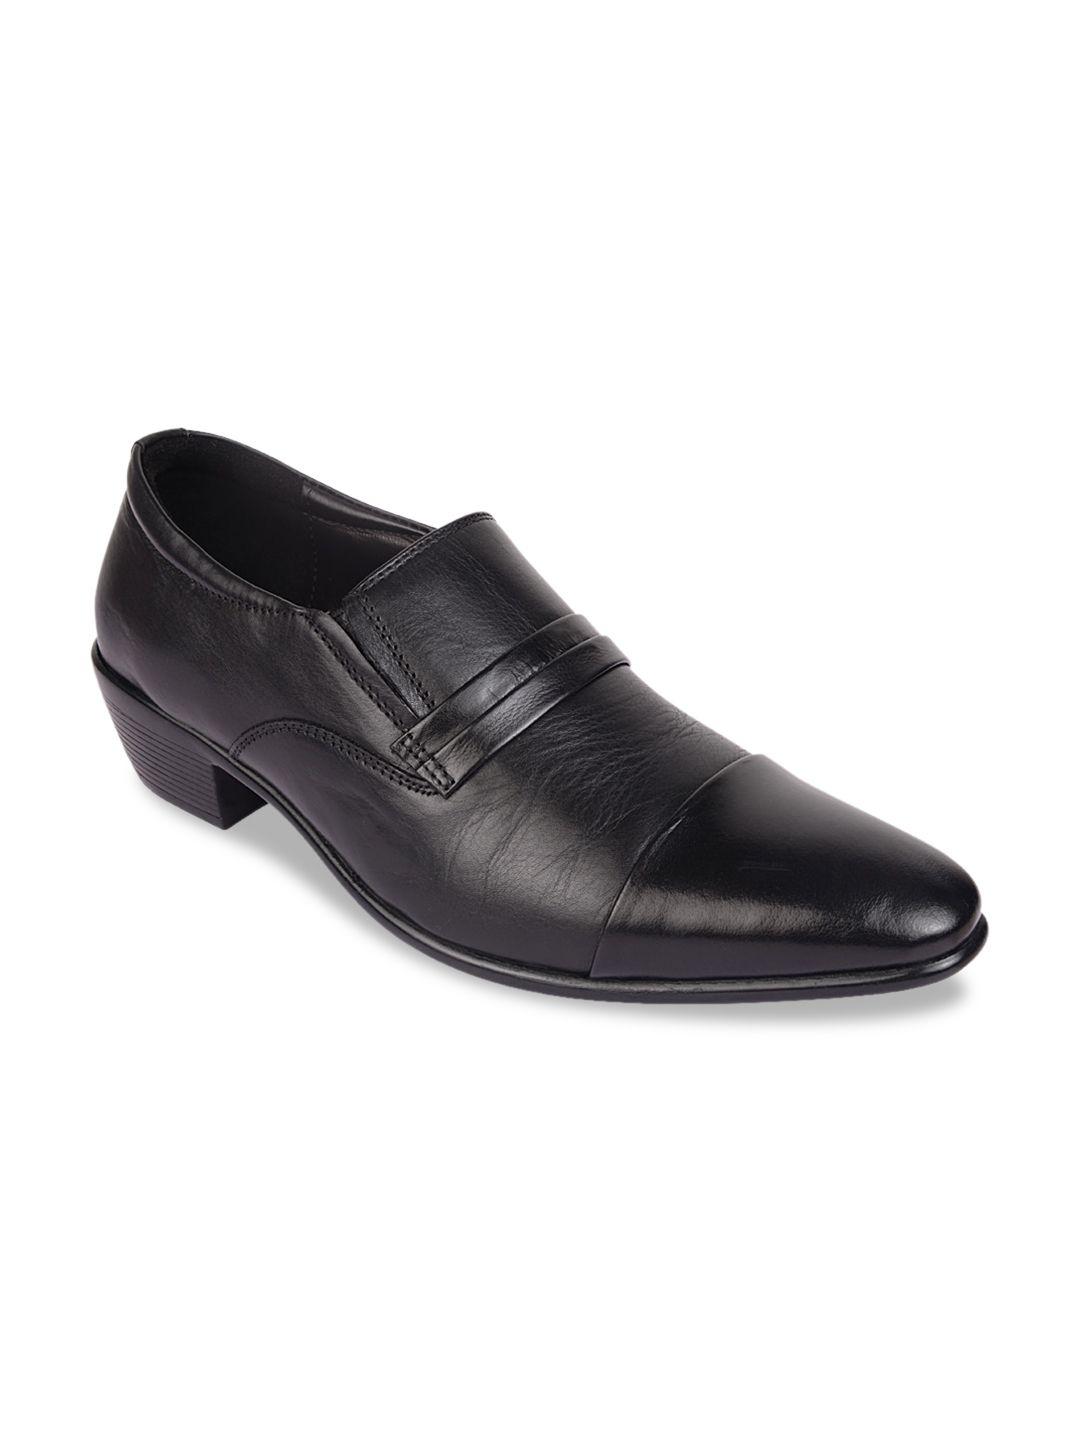 regal-men-black-leather-loafers